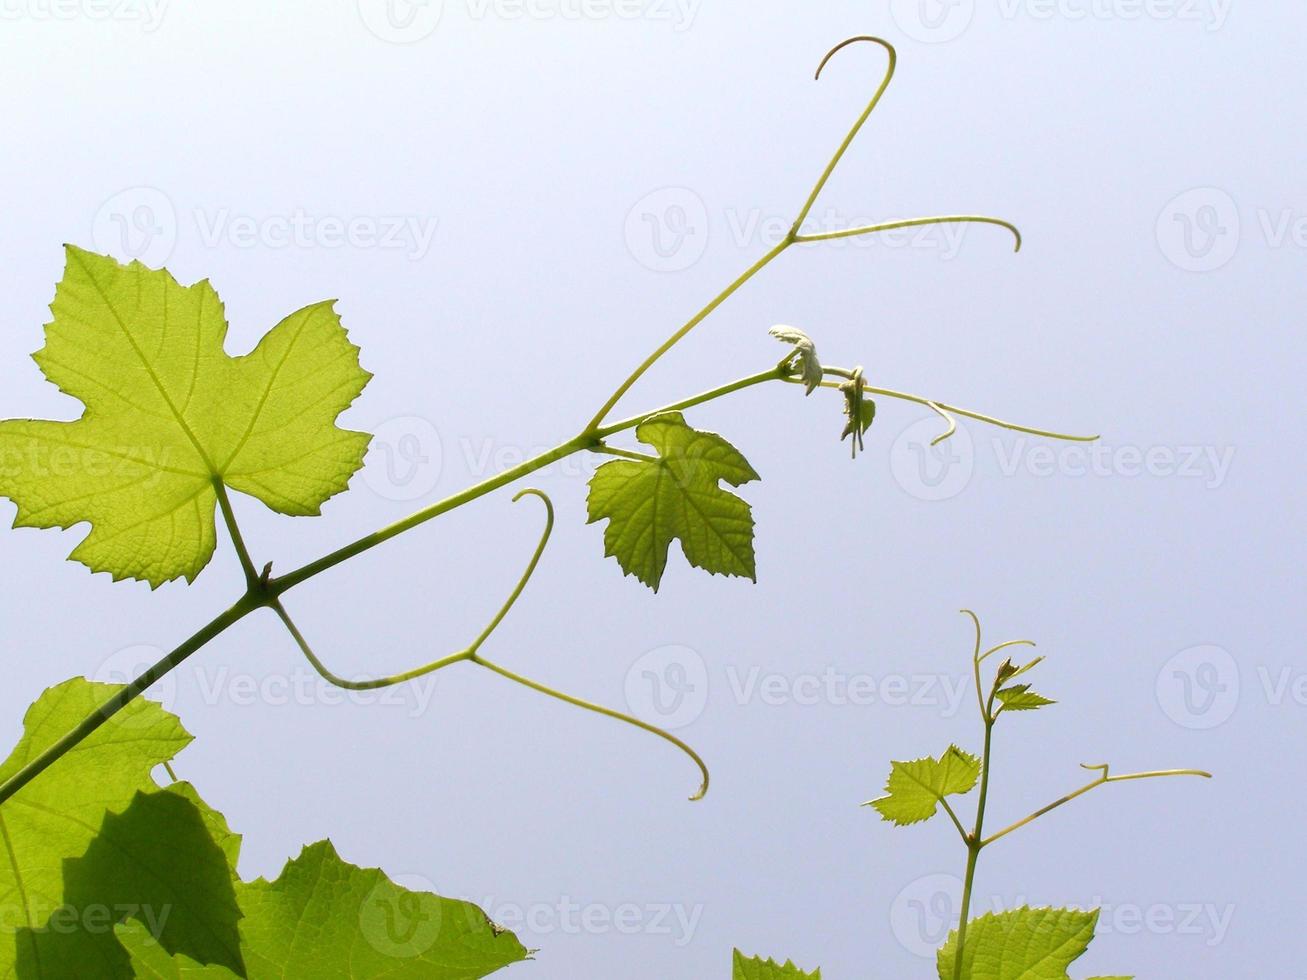 pianta di vite vitis vinifera foto